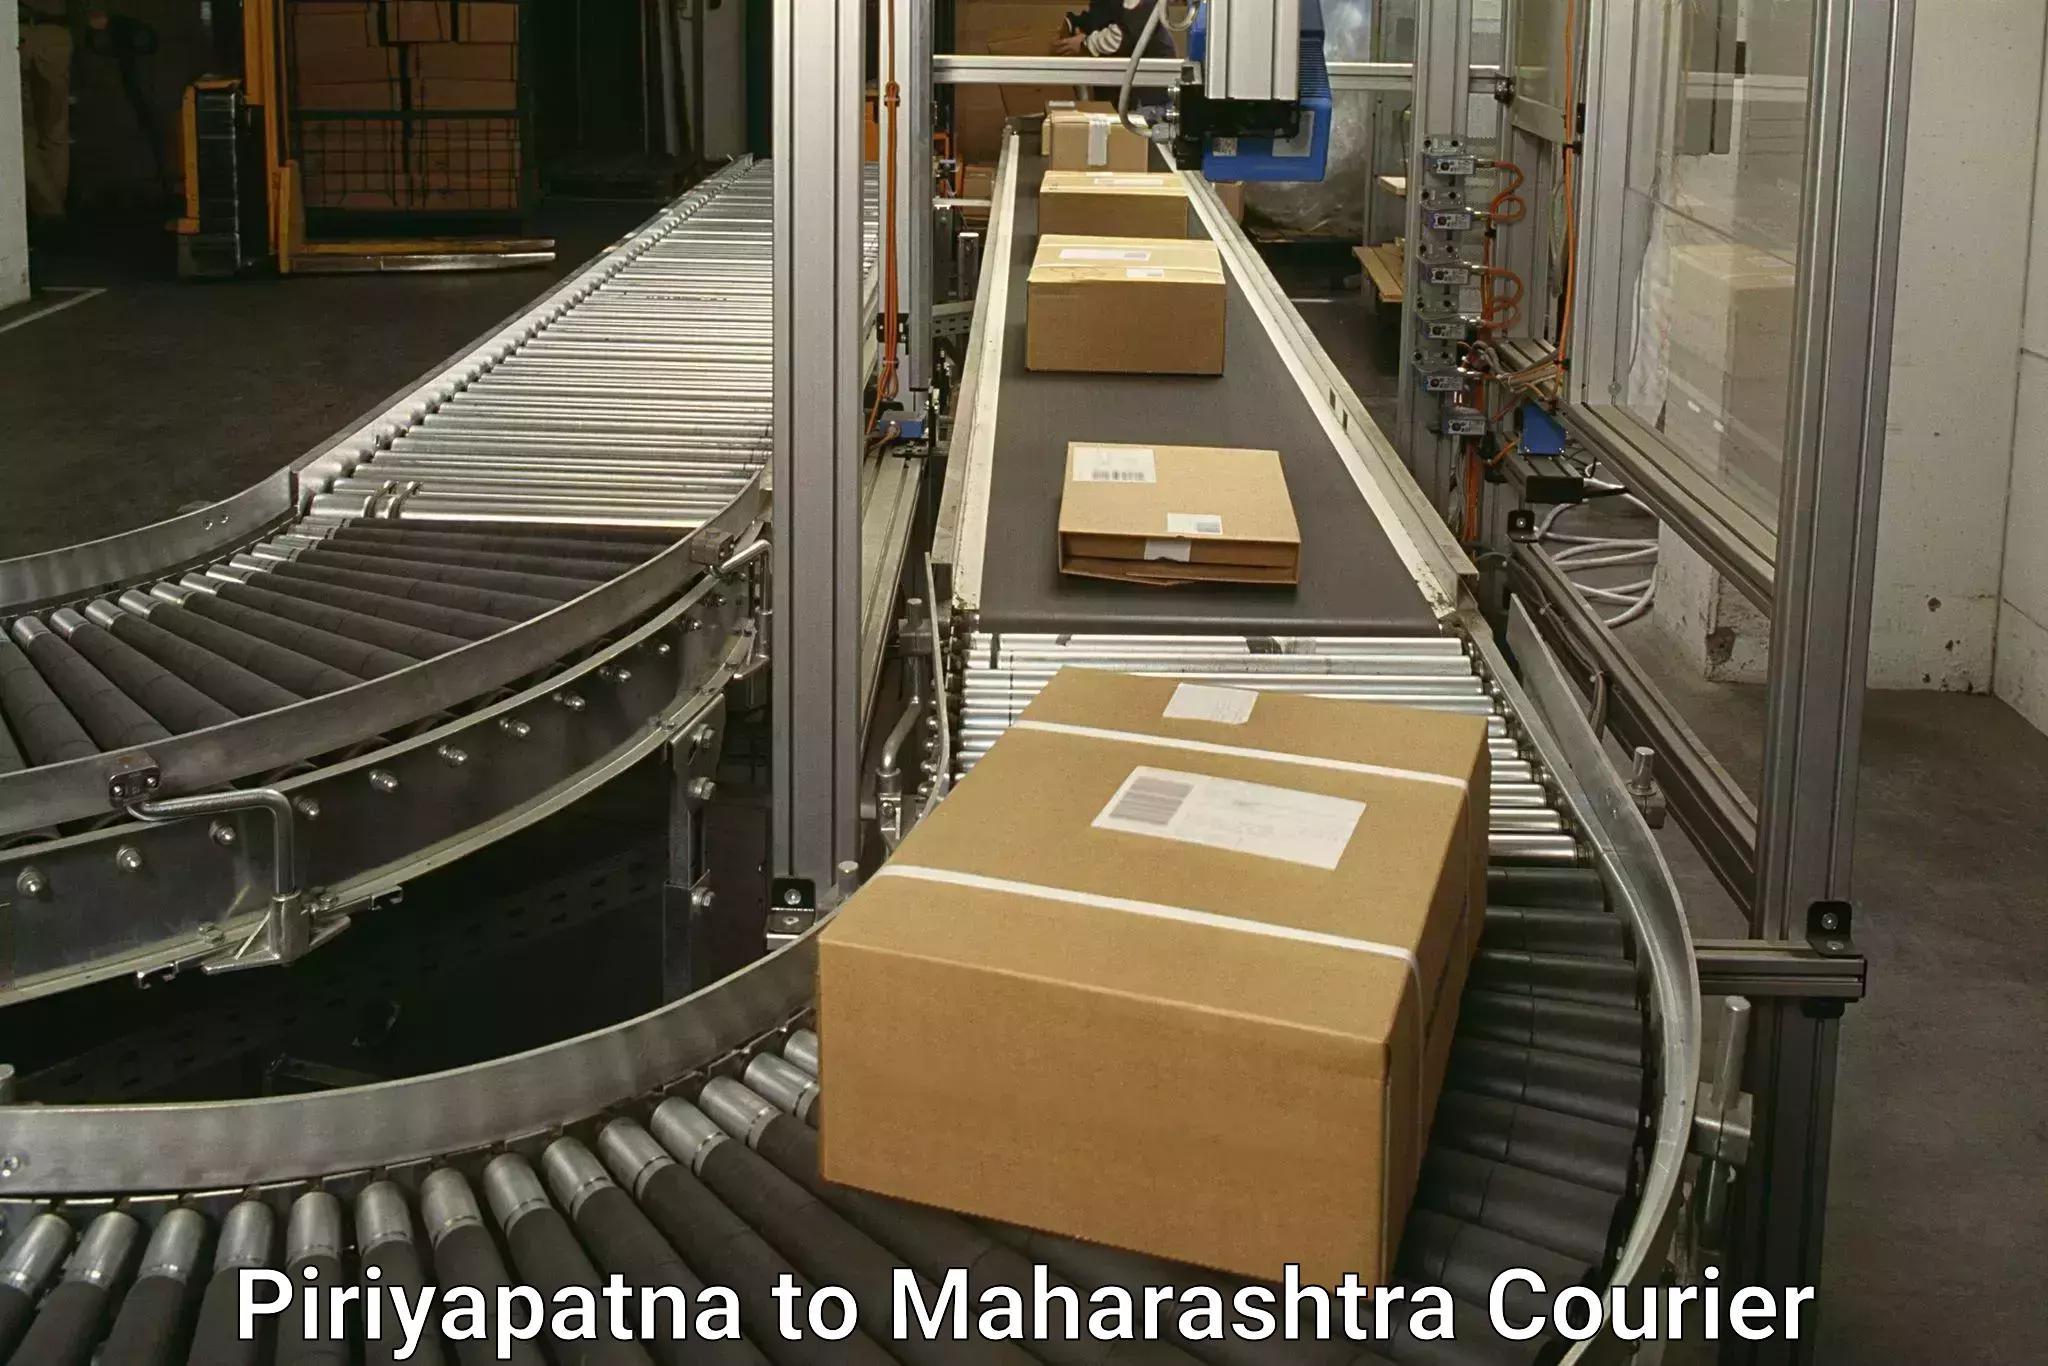 Return courier service in Piriyapatna to Shivajinagar